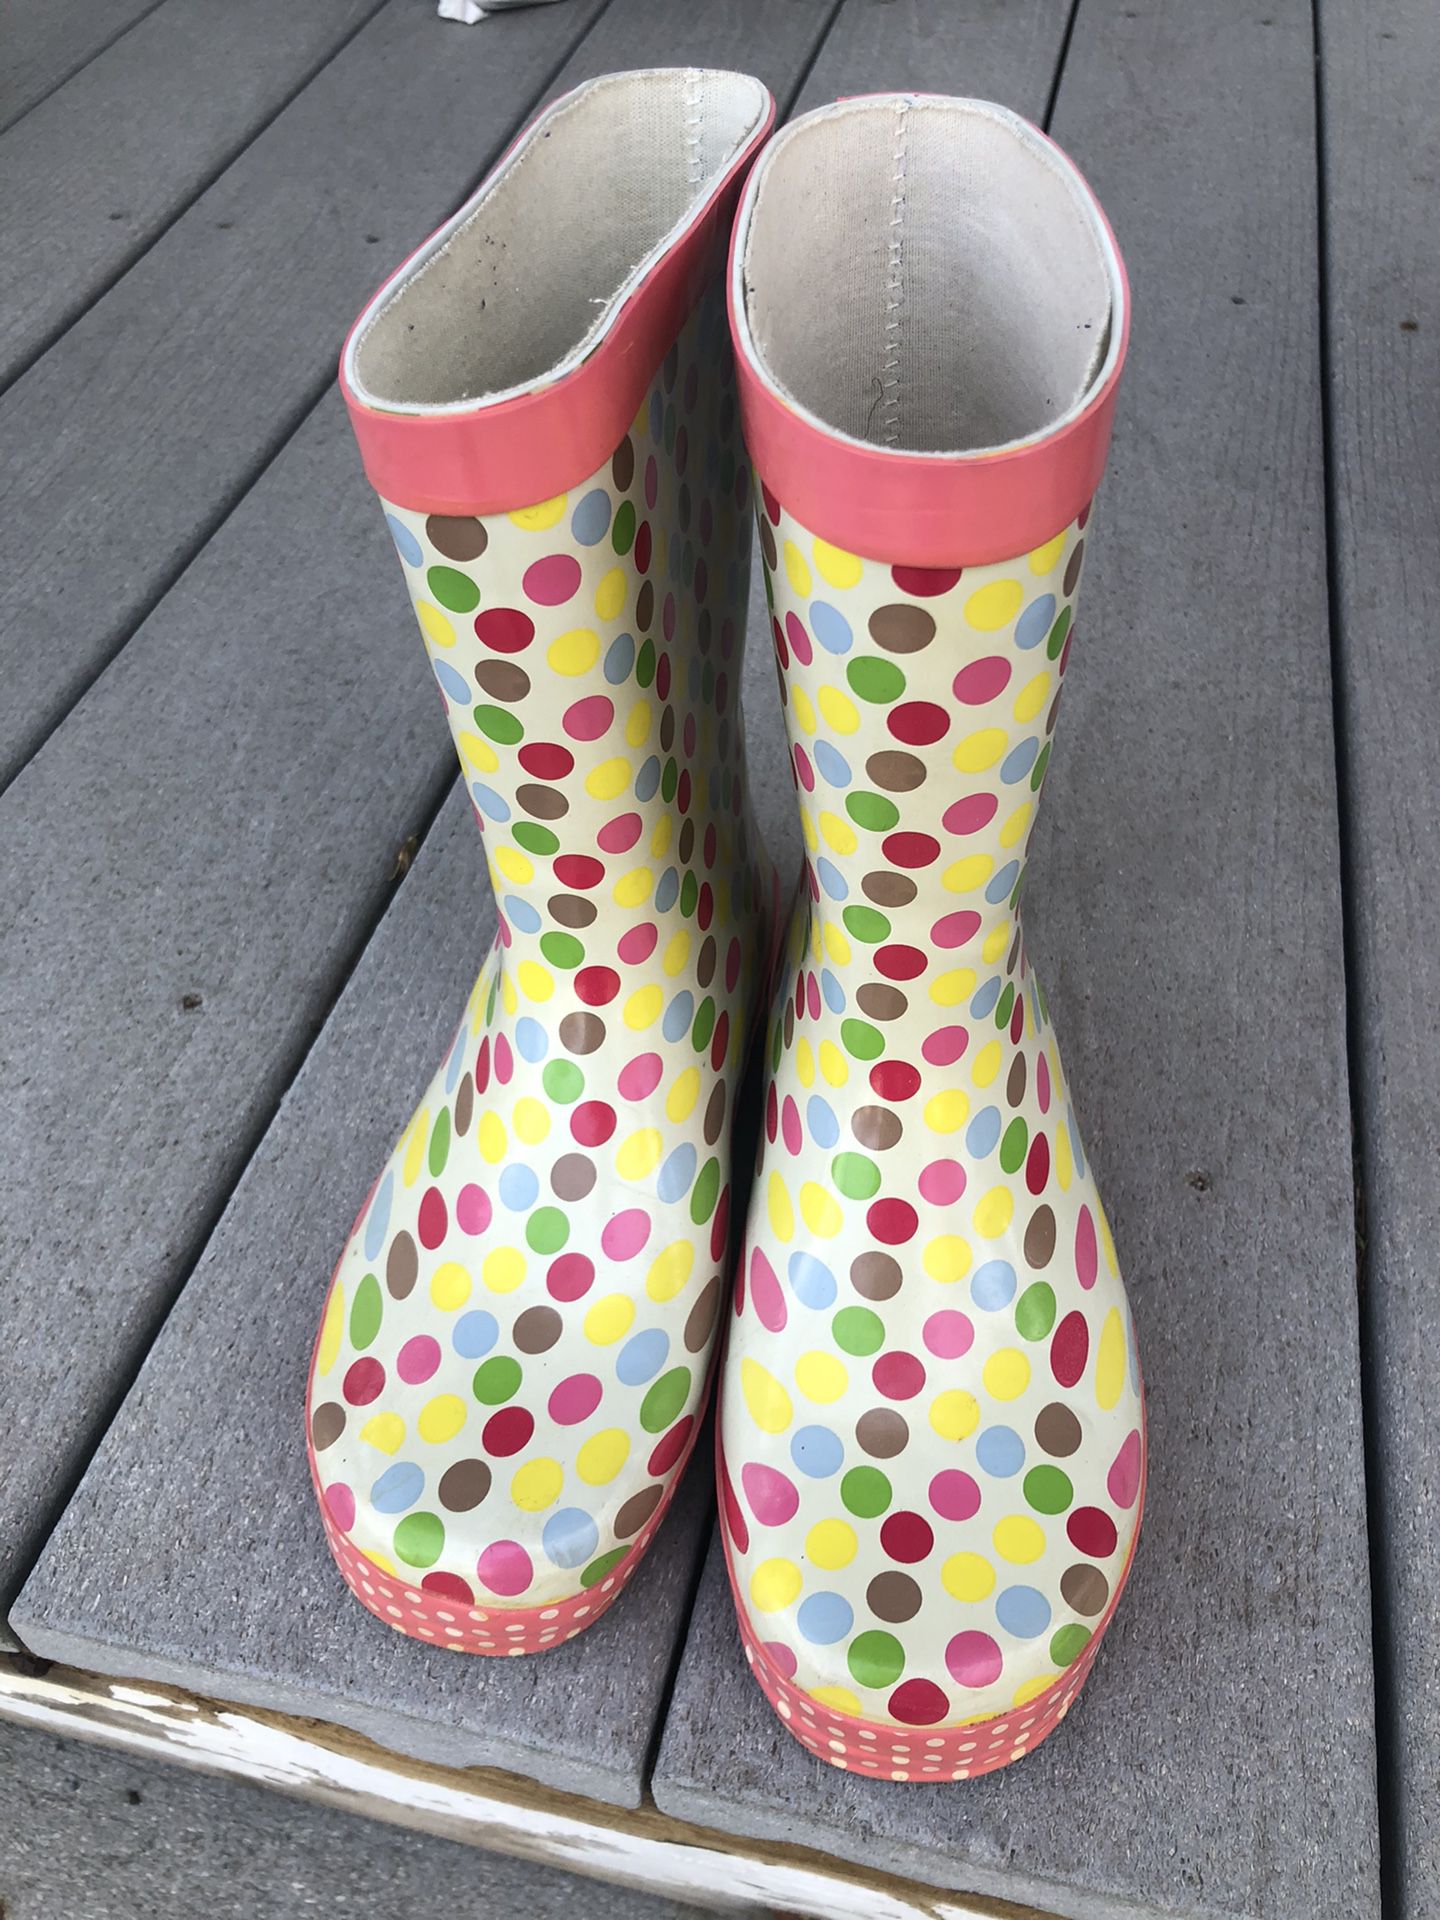 Size 2 rain boots